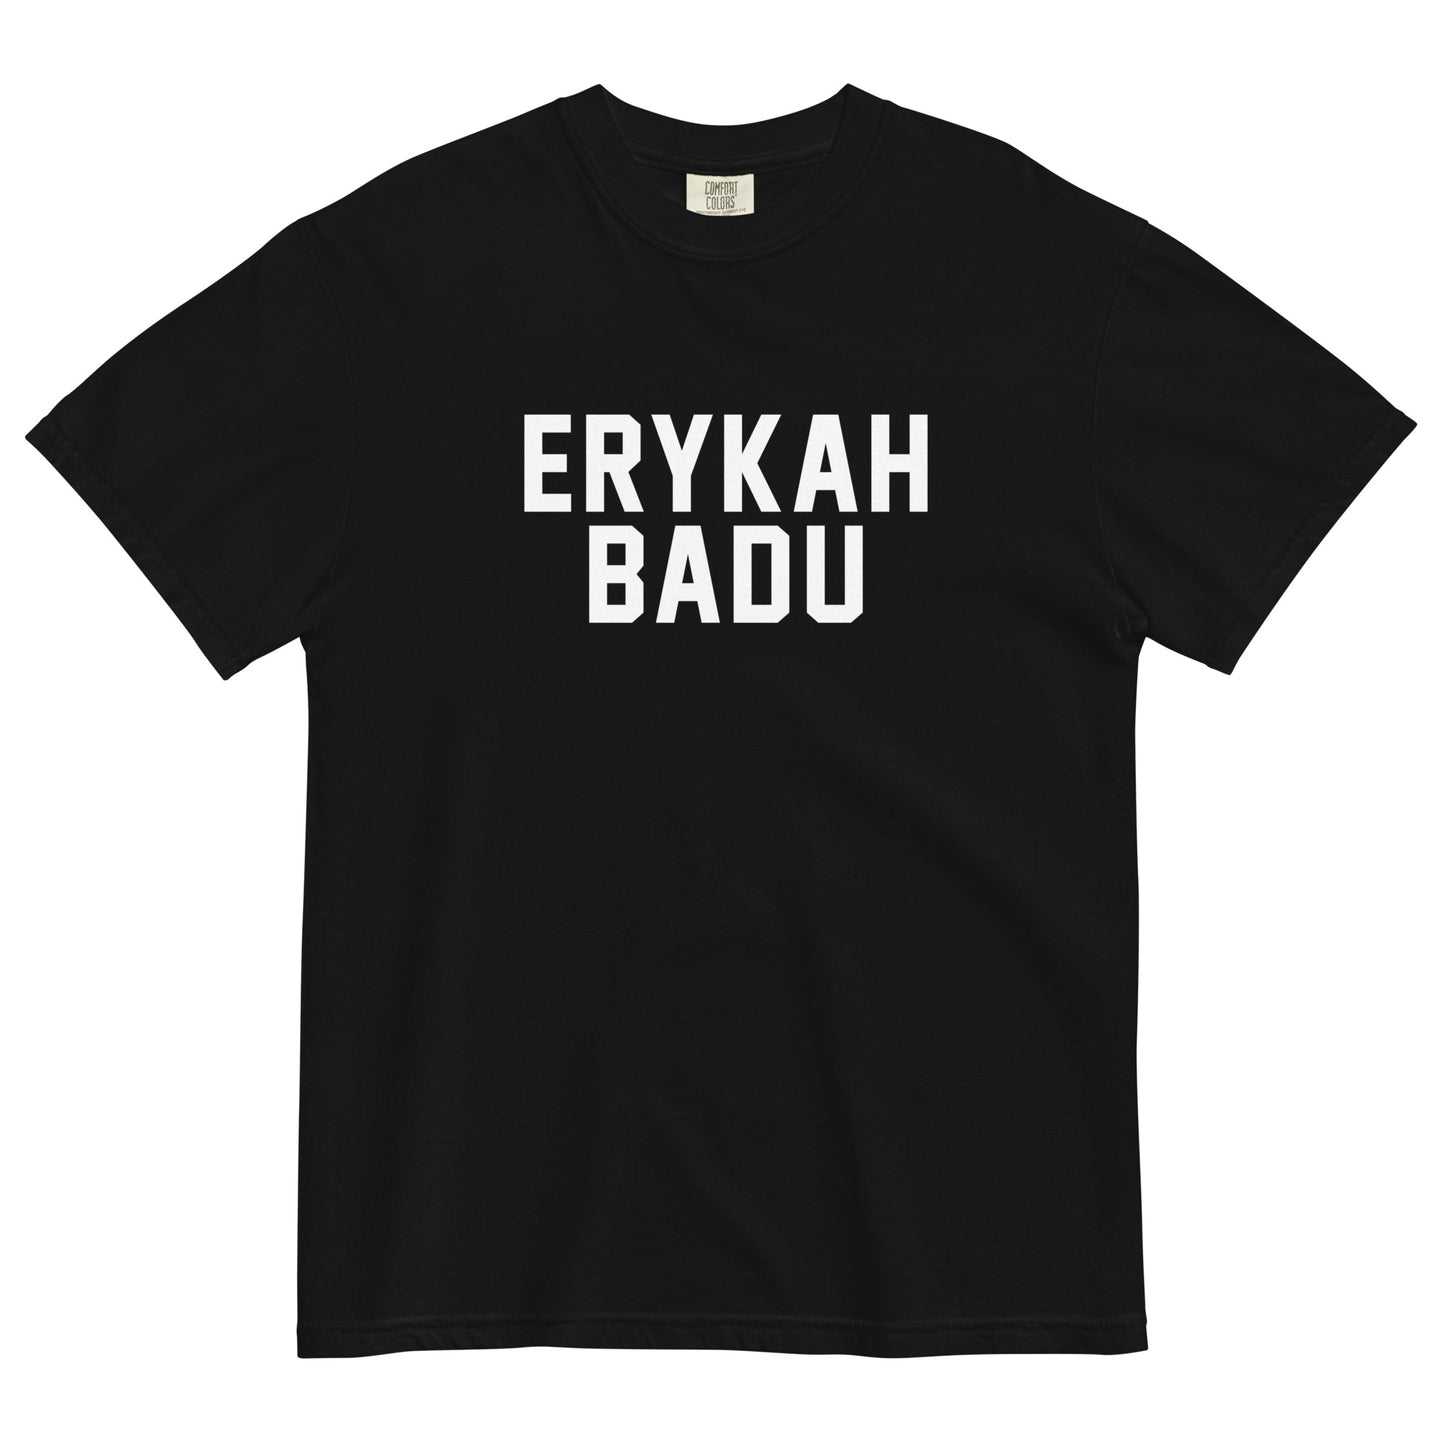 ERYKAH BADU